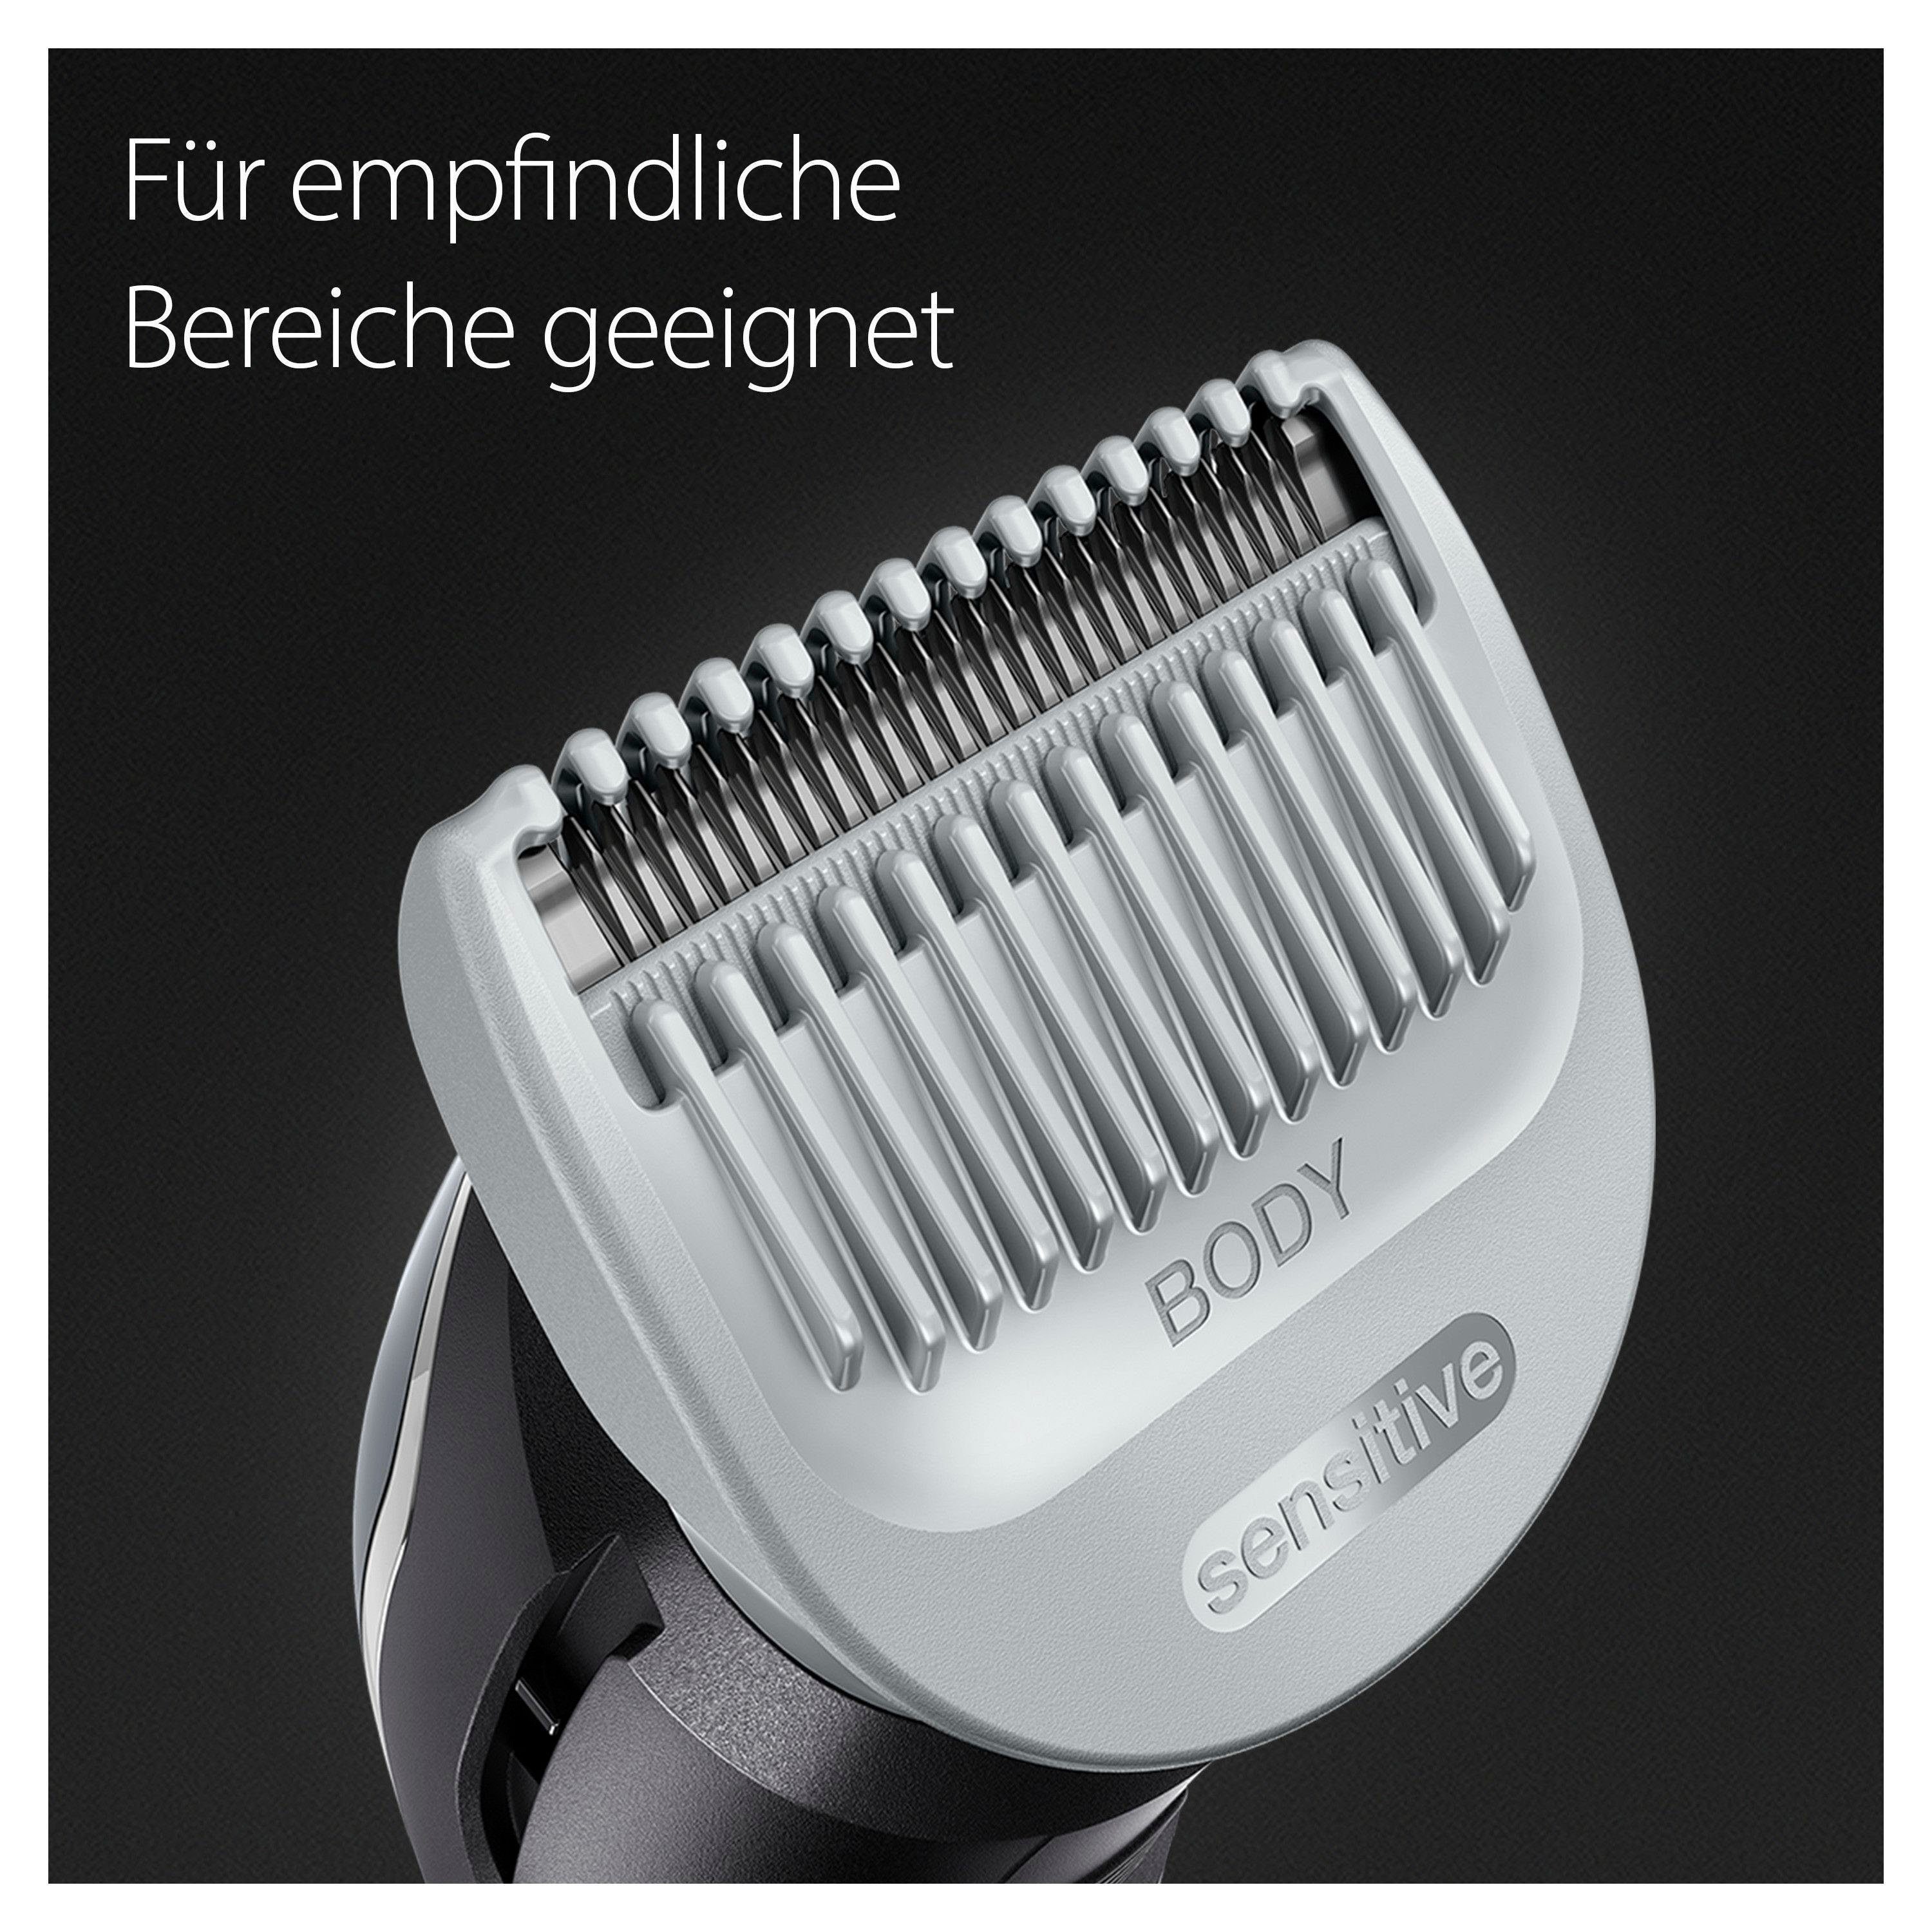 SkinShield-Technologie, Braun Bodygroomer Haarschneider Wasserdicht BG5340,